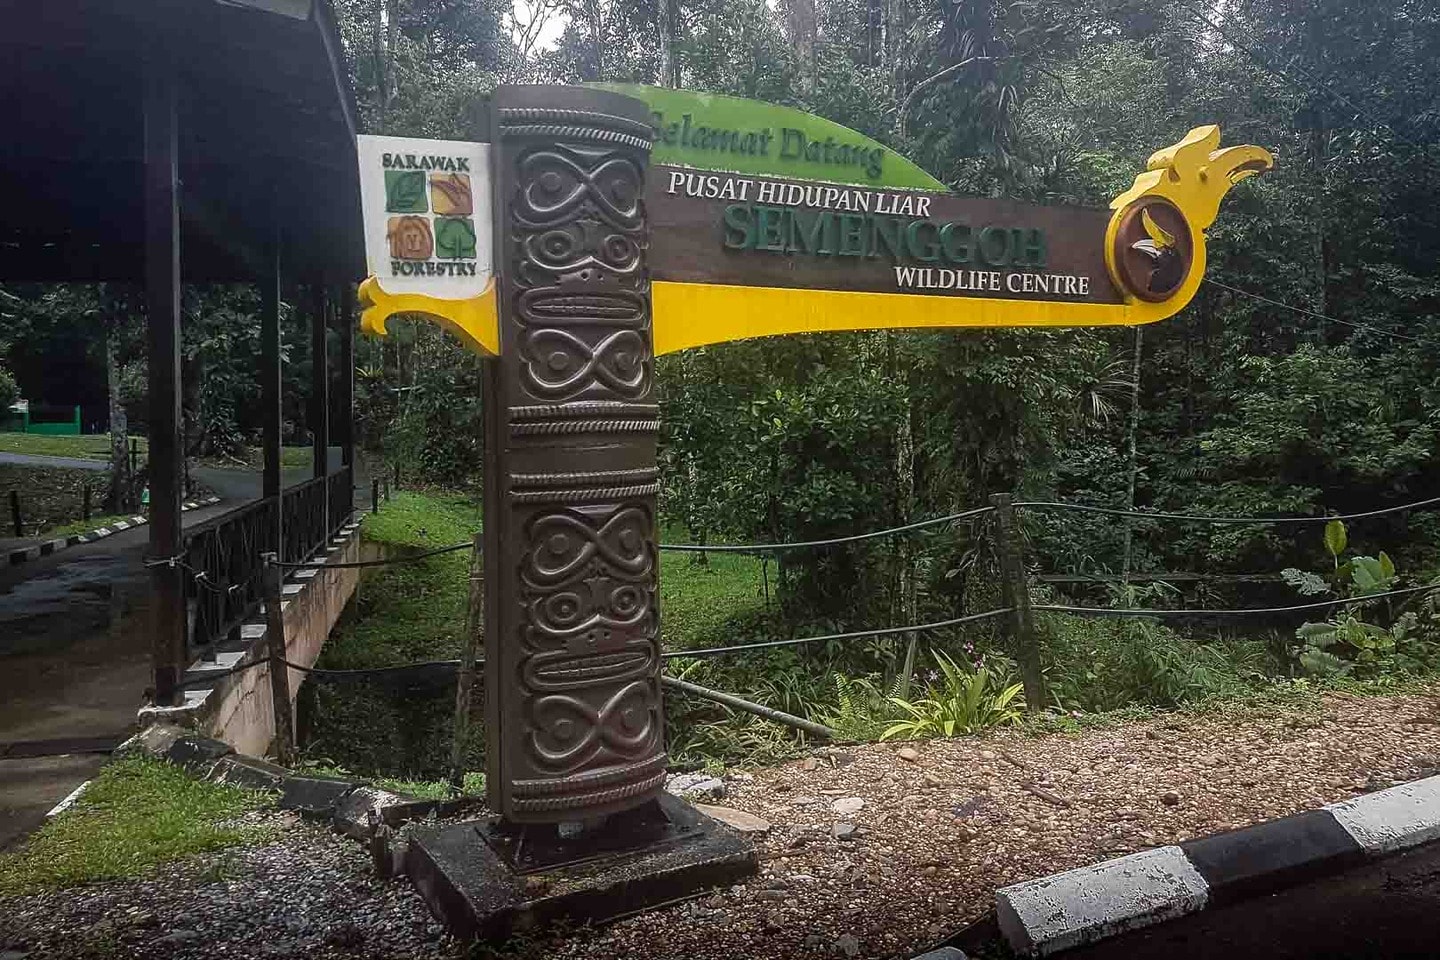 Semenggoh Wildlife Centre in Borneo